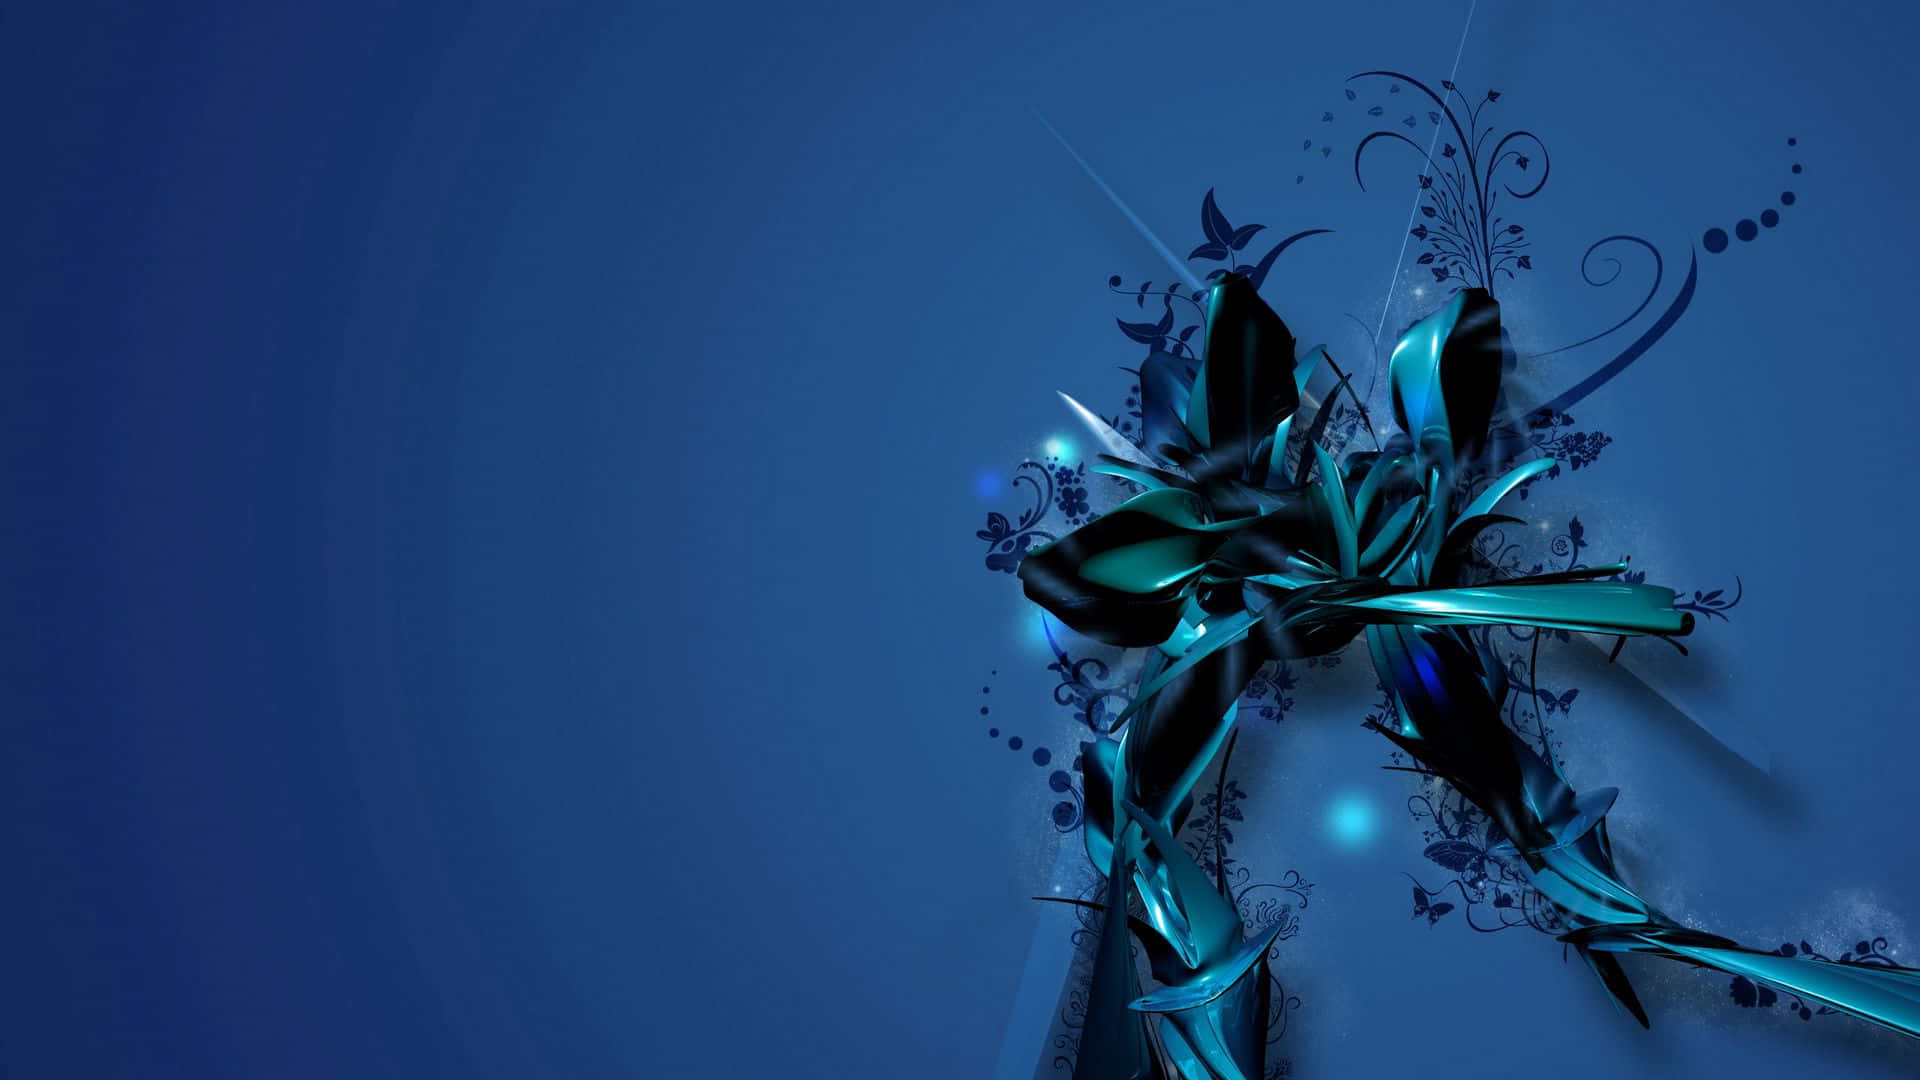 Papelde Parede Abstrato De Flor Azul Para Computador. Papel de Parede